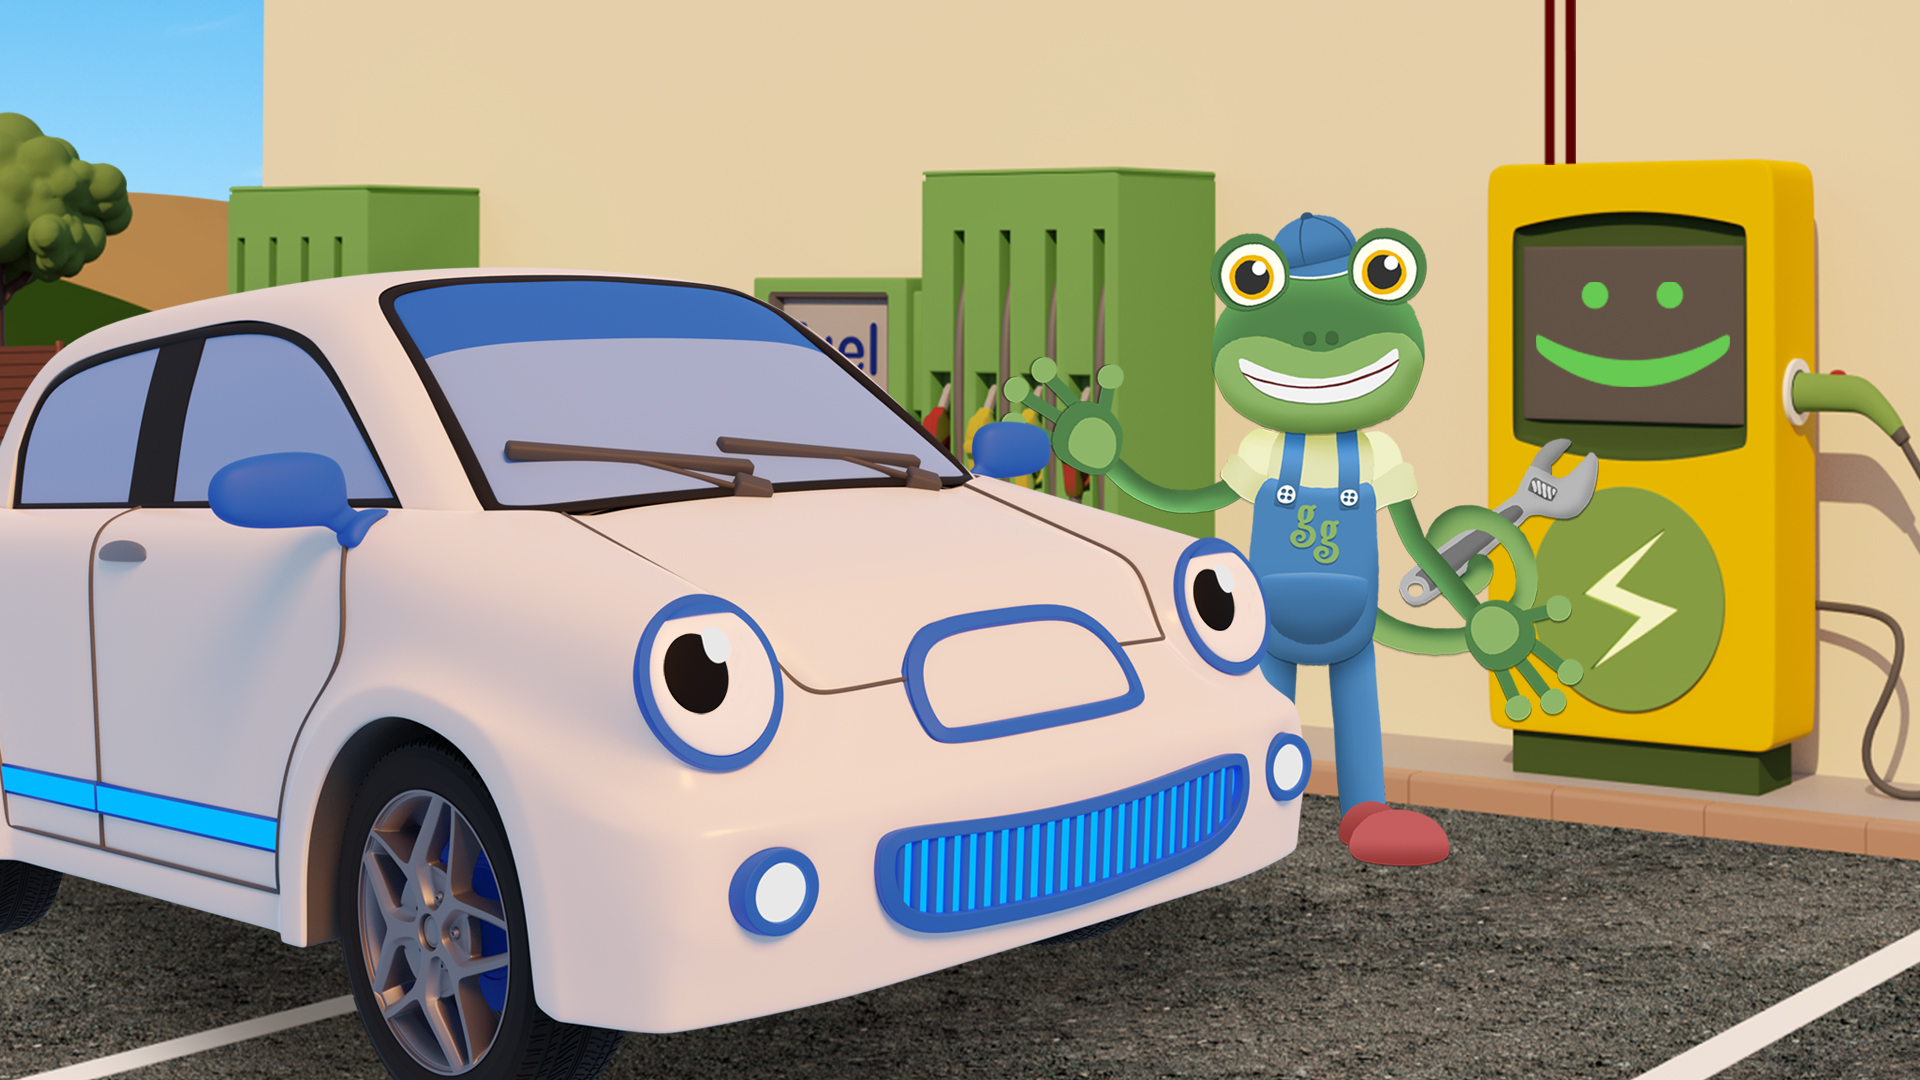 Gecko's Garage - Toddler Fun Learning